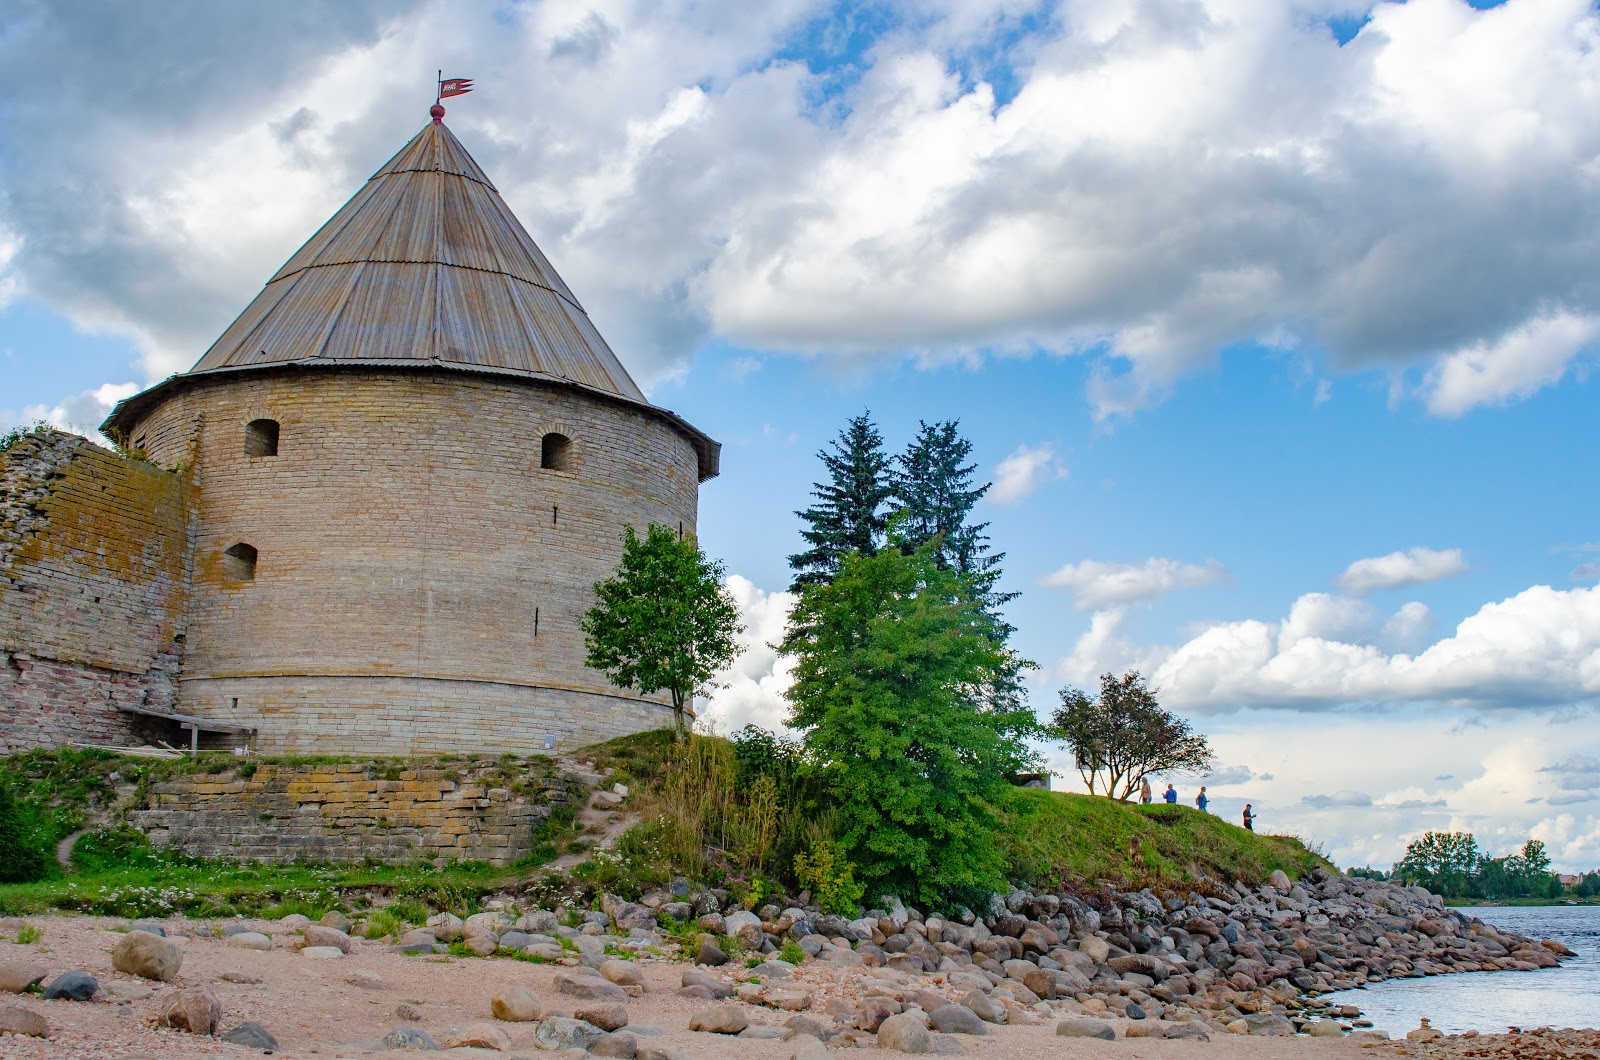 King's (Naryshkin) tower